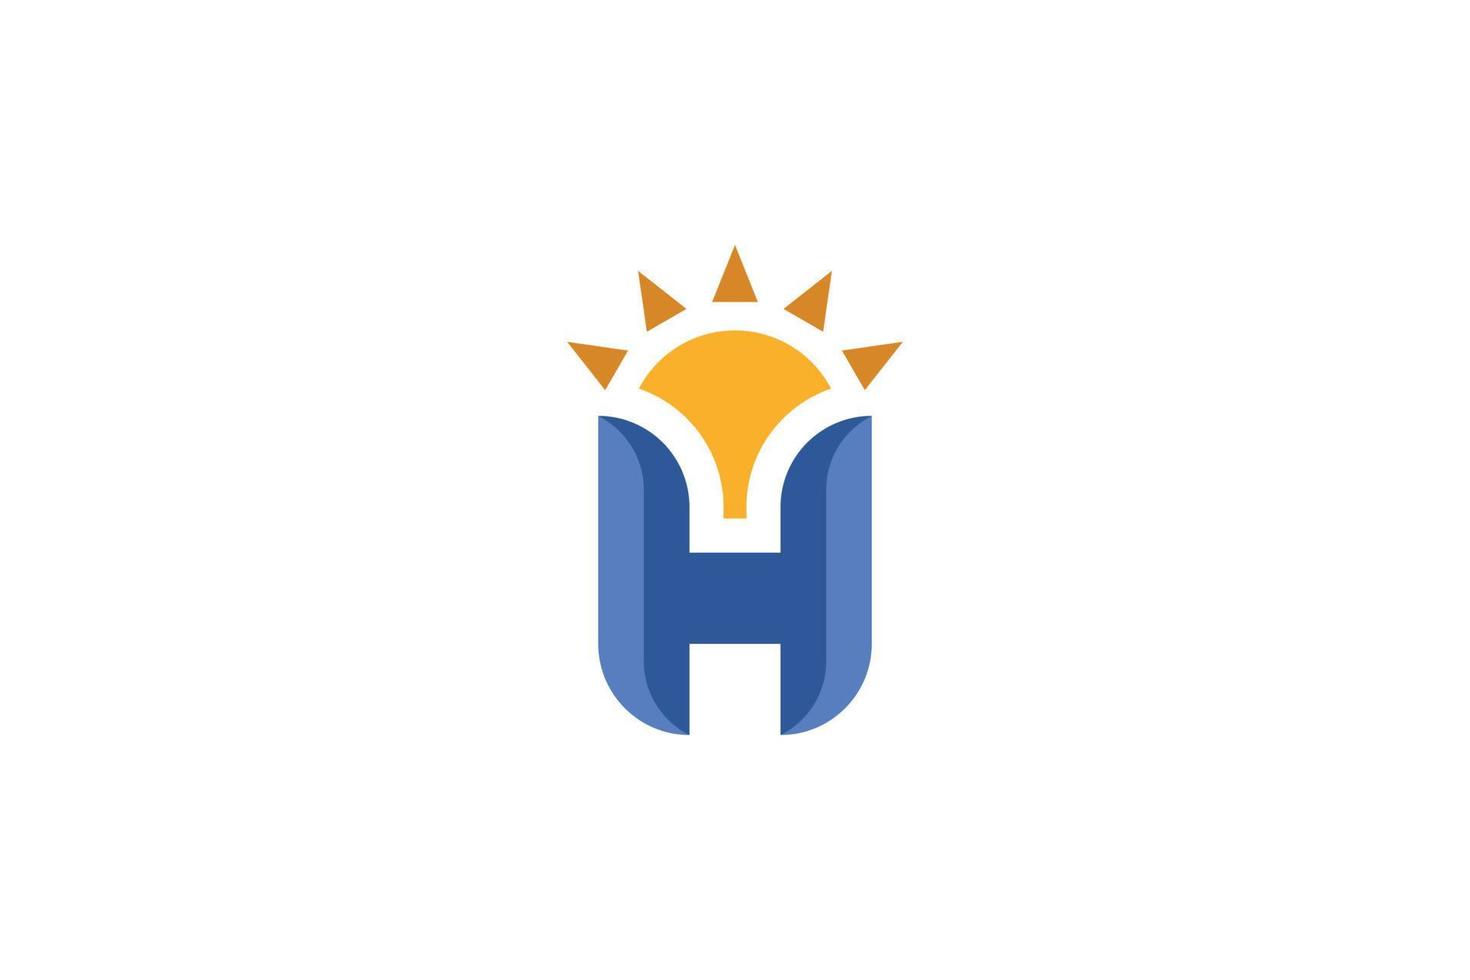 logotipo colorido de la letra h vector